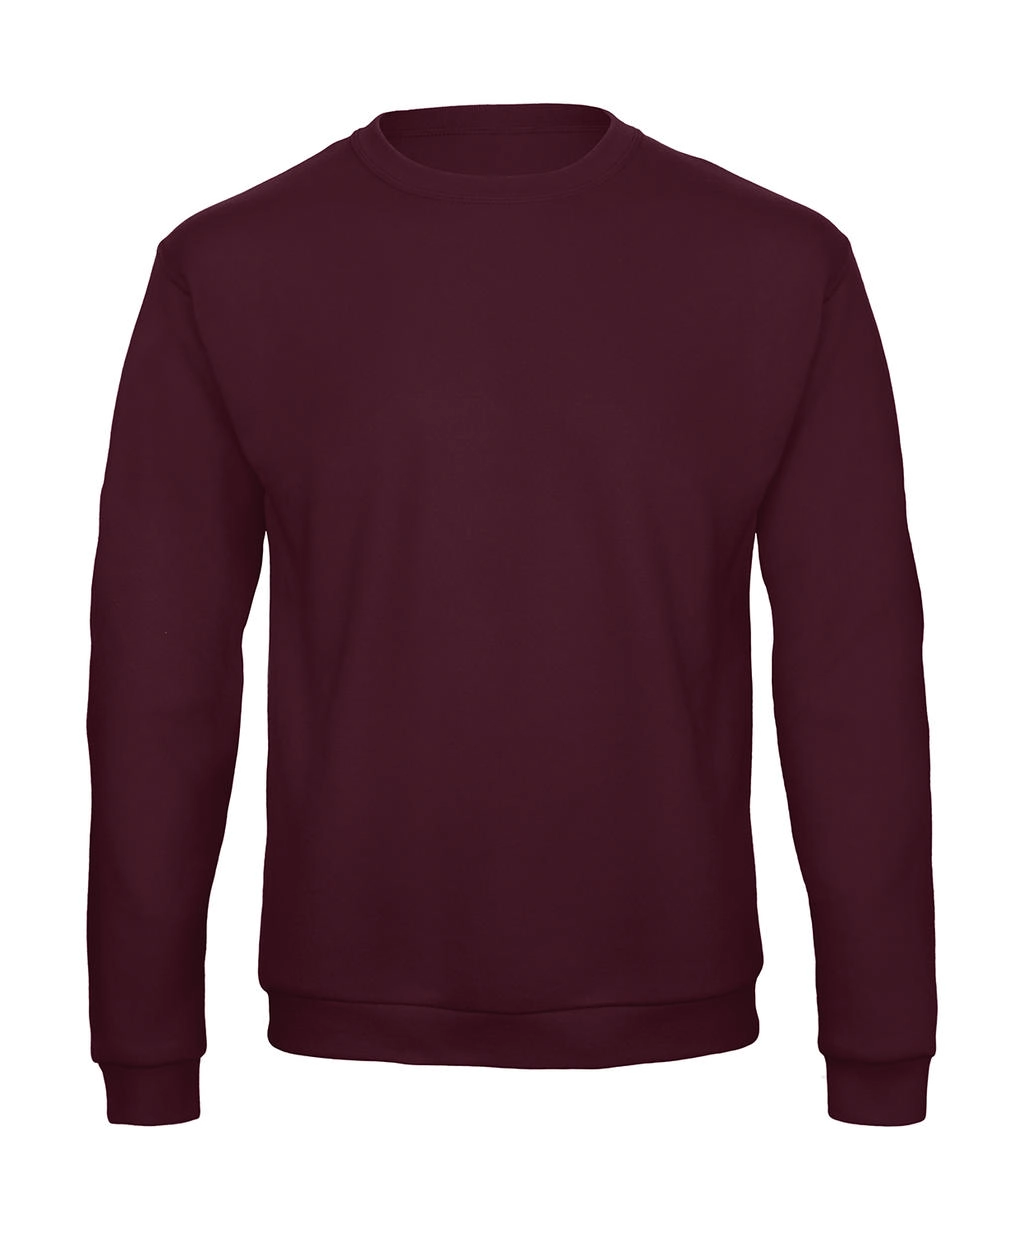 ID.202 50/50 Sweatshirt Unisex zum Besticken und Bedrucken in der Farbe Burgundy mit Ihren Logo, Schriftzug oder Motiv.